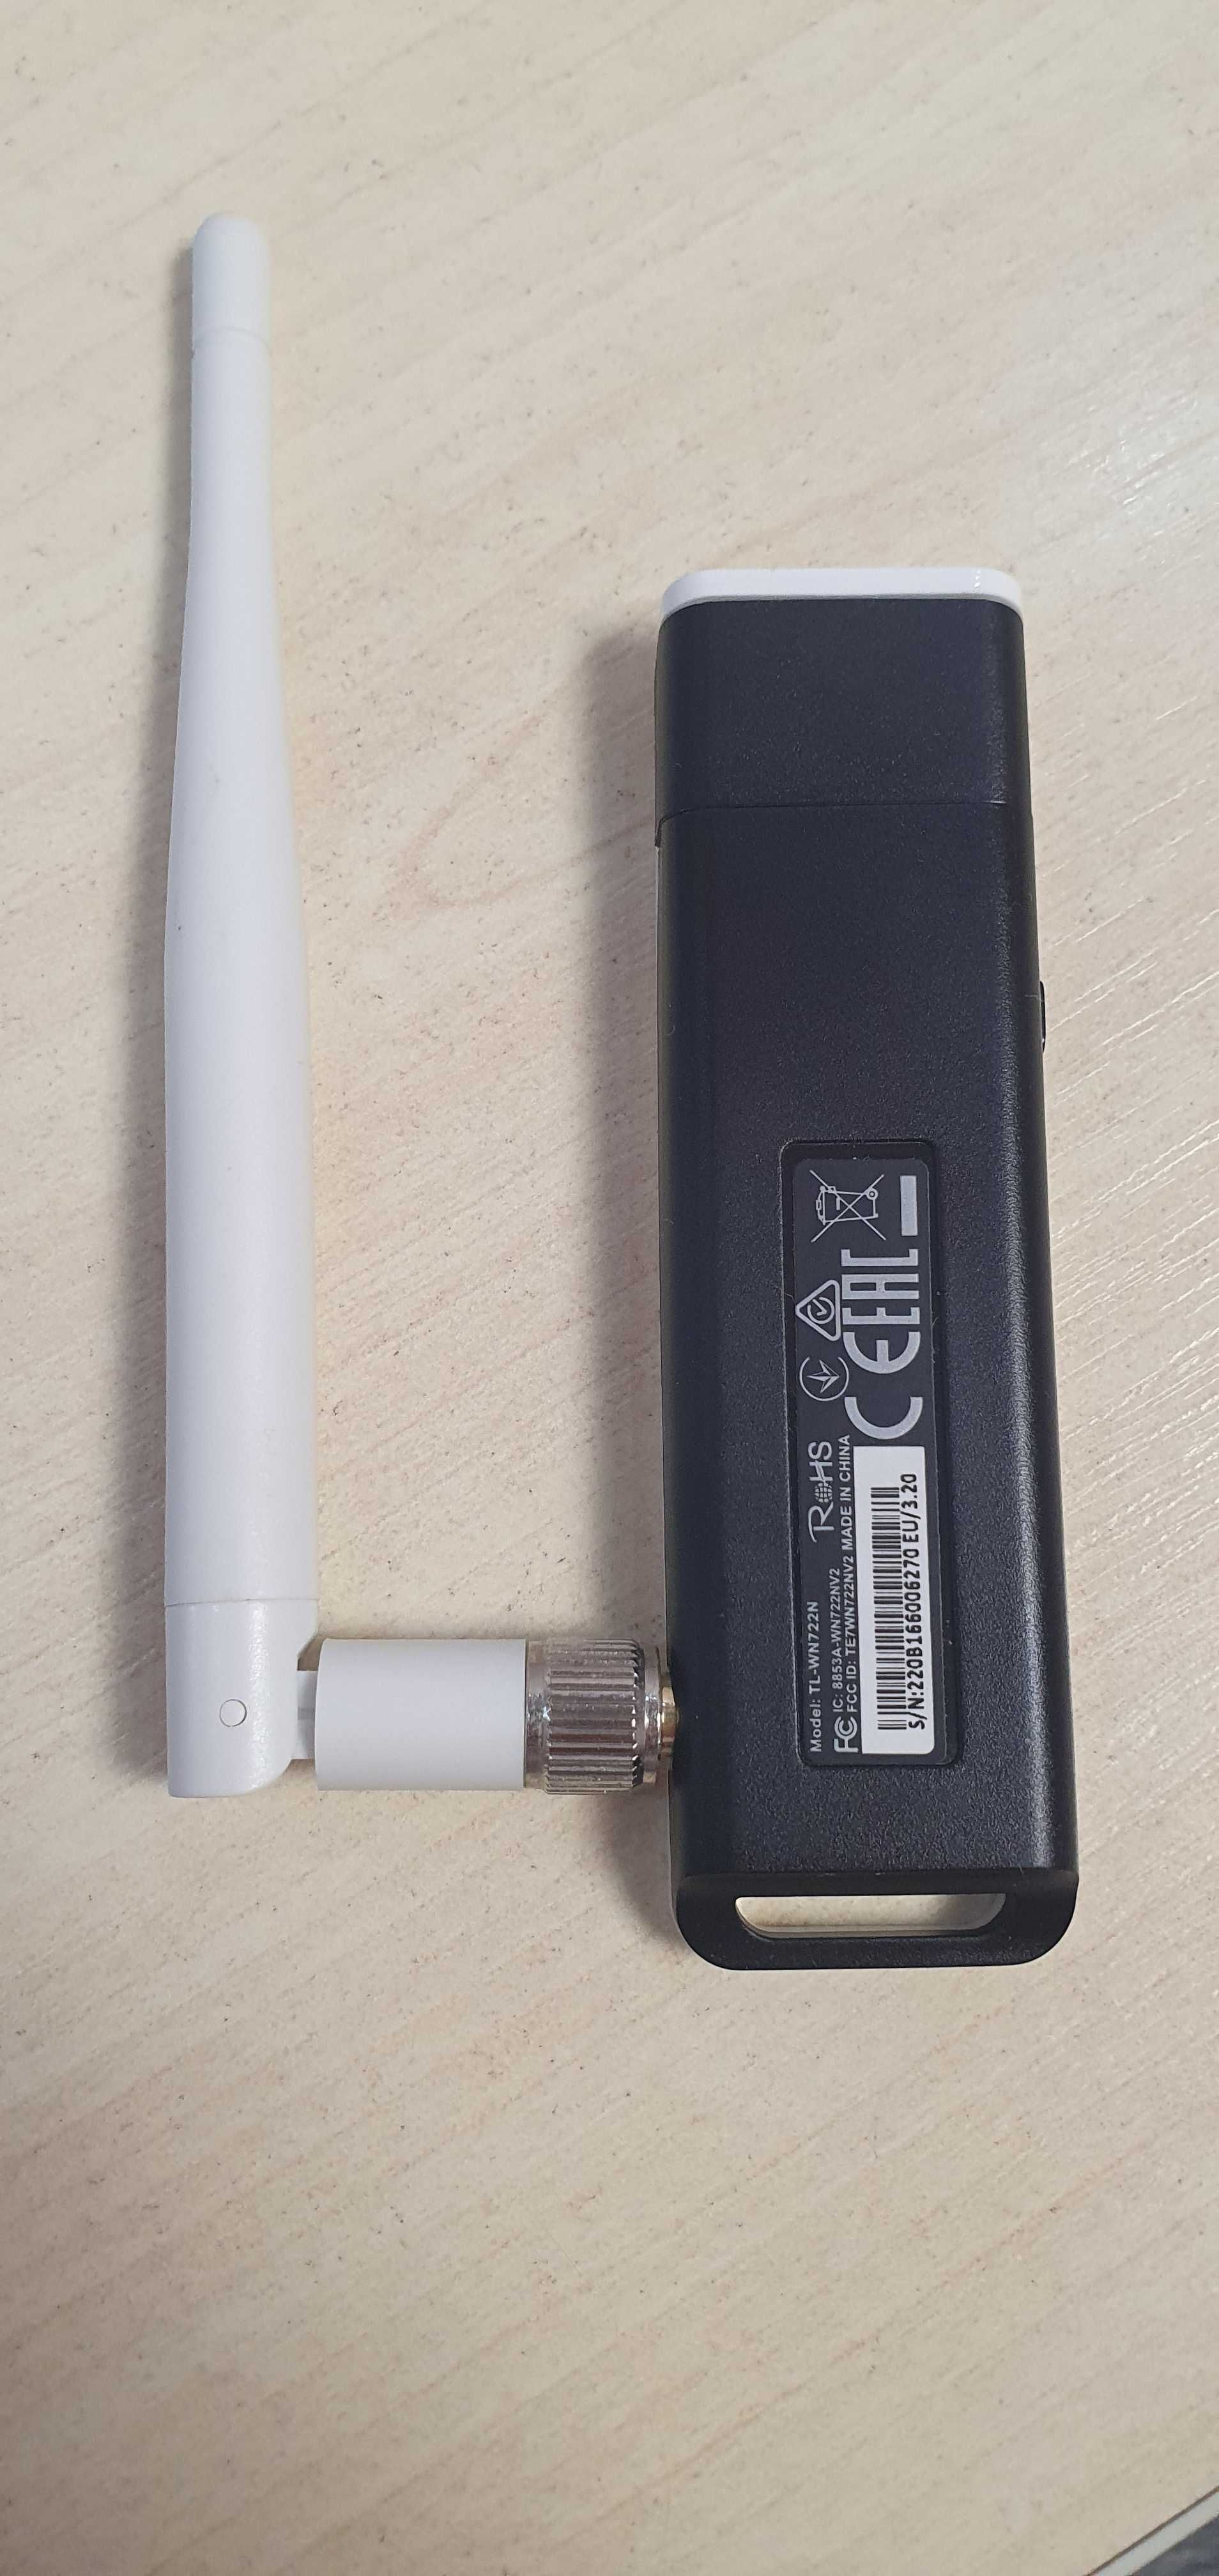 USB Wi-Fi адаптер TP-LINK TL-WN722N